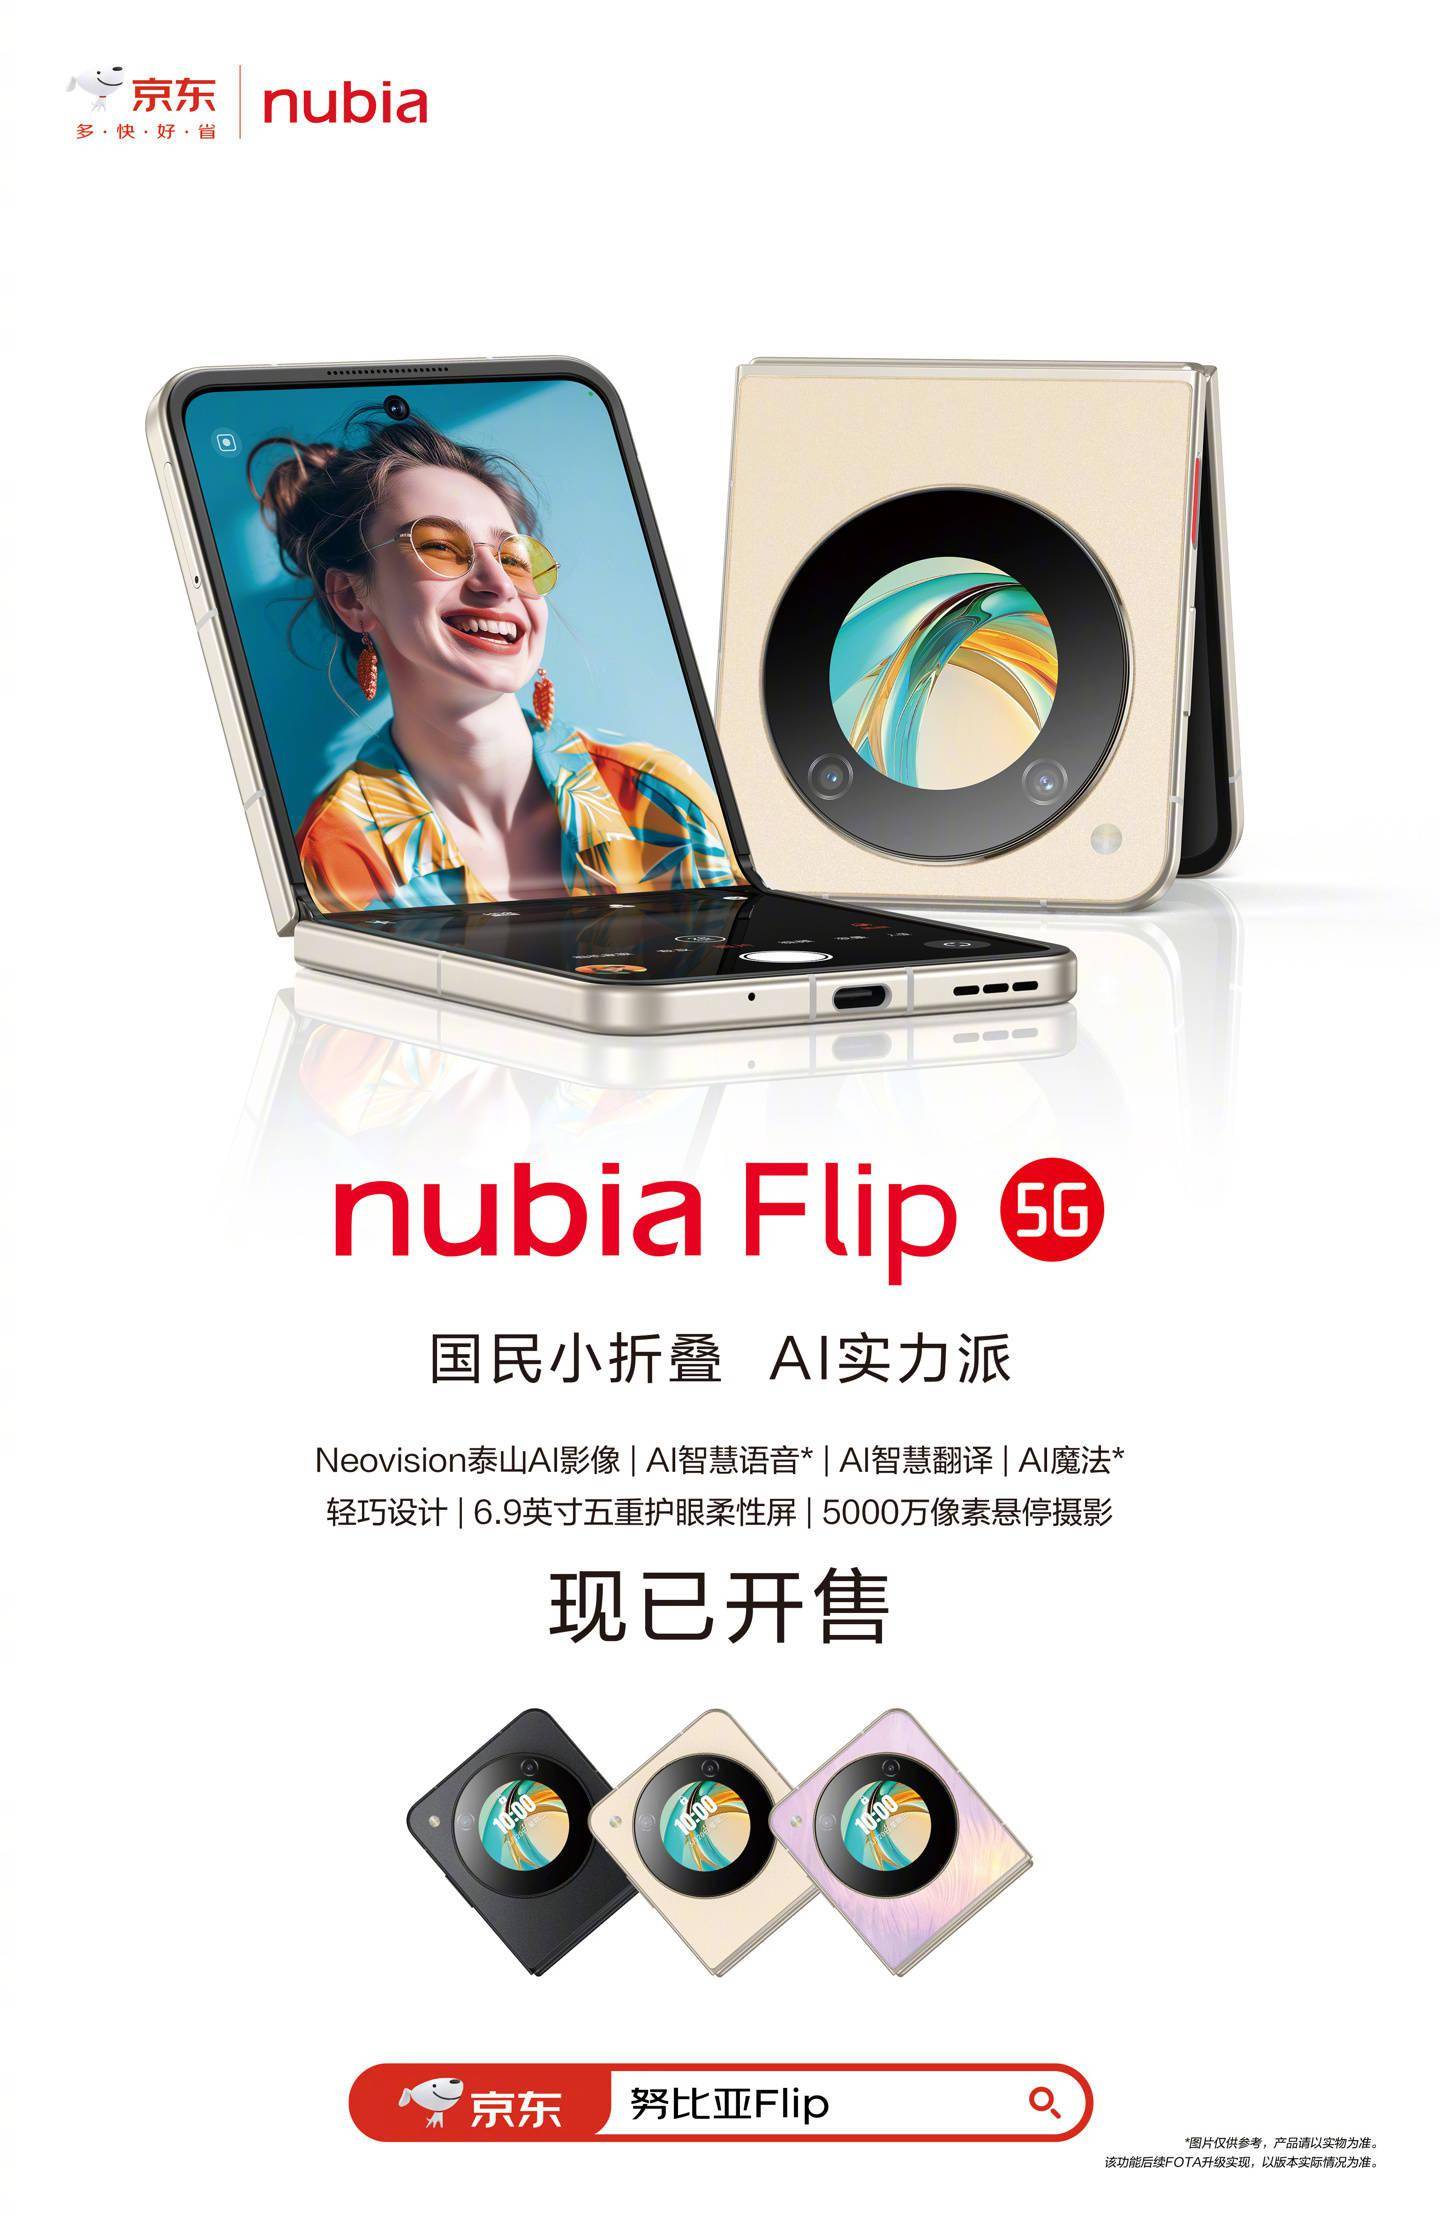 中兴努比亚nubia Flip小折叠手机开售 搭载4310mAh电池